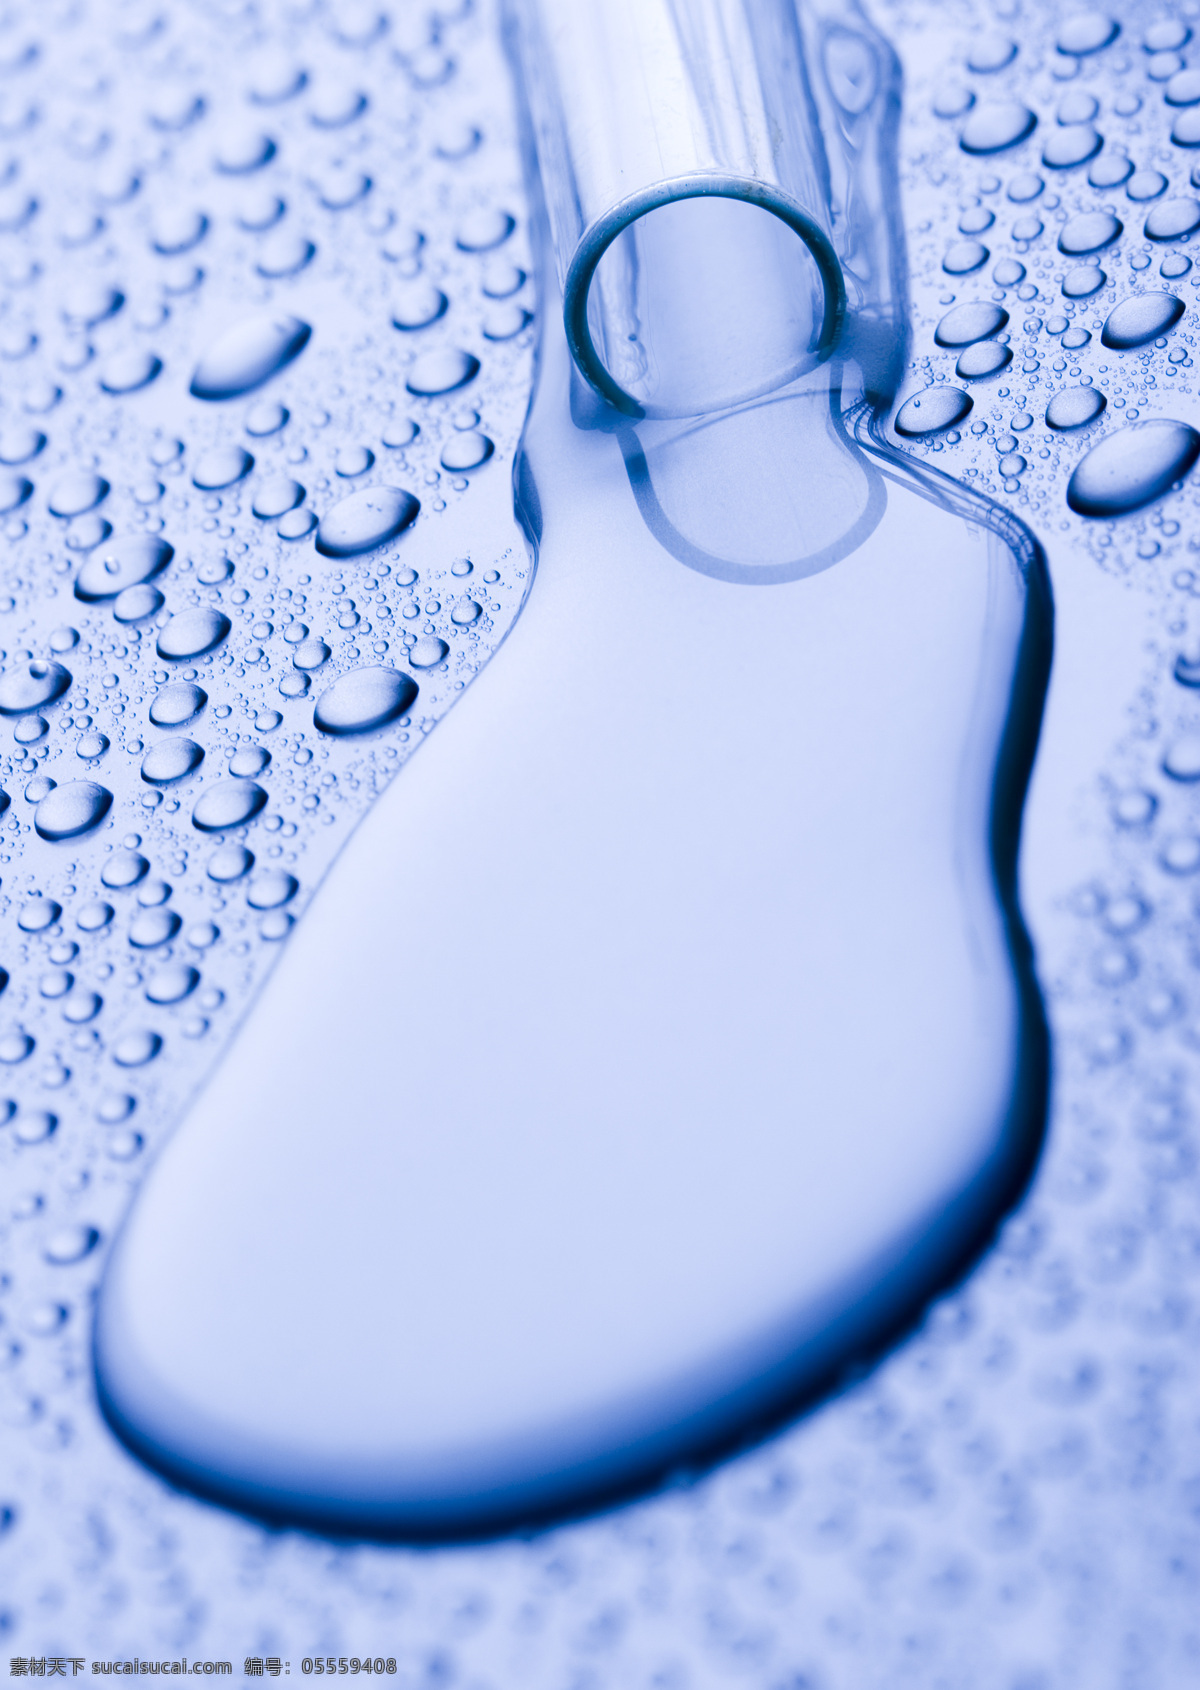 水珠背景 水珠 水滴 露珠 水珠图片 清澈的水珠 干净 清澈 水元素 玻璃管 冰水烈火 生活百科 蓝色